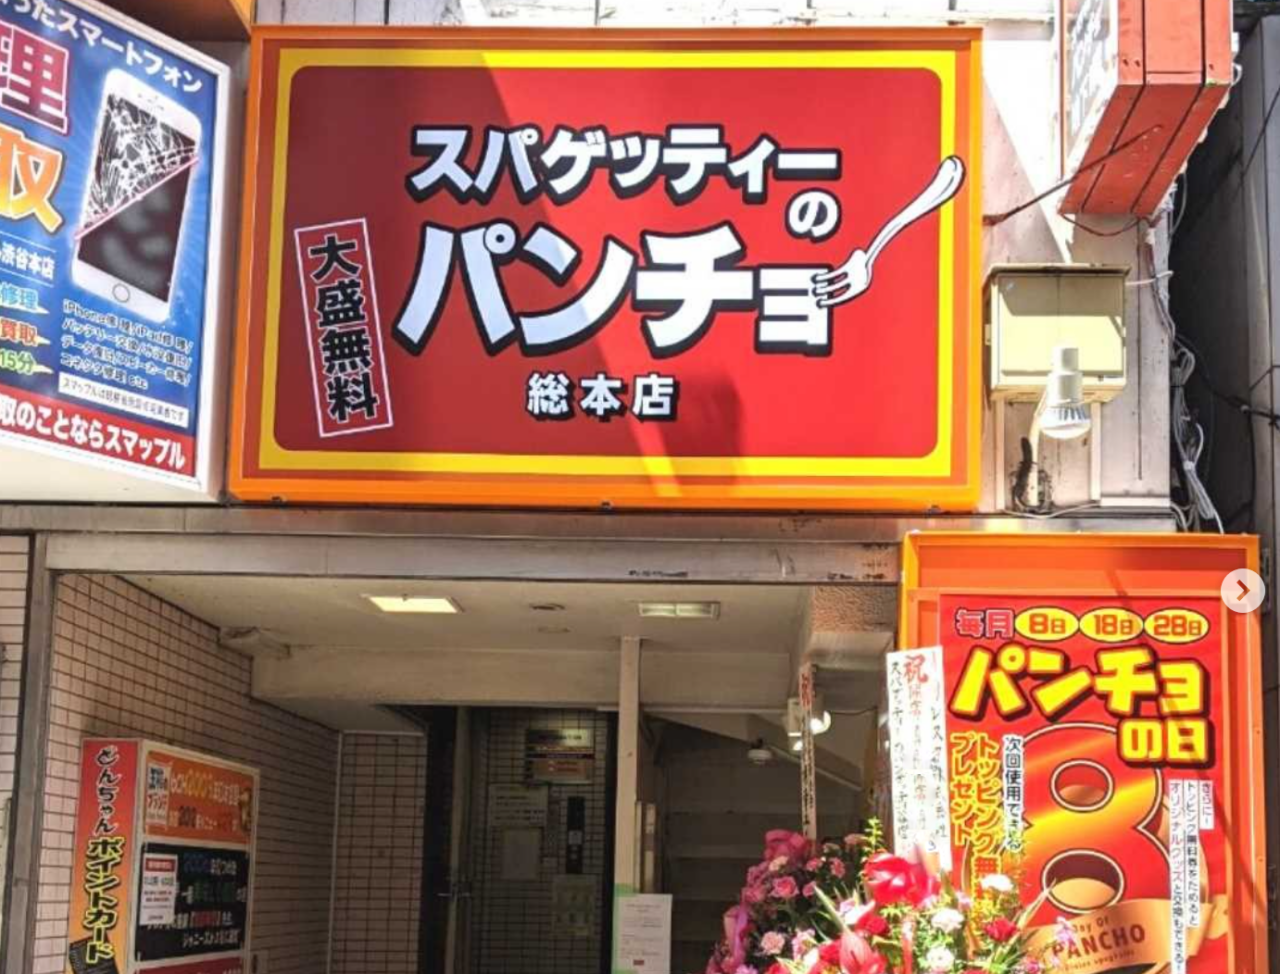 「スパゲッティーのパンチョ」の総本店である渋谷店